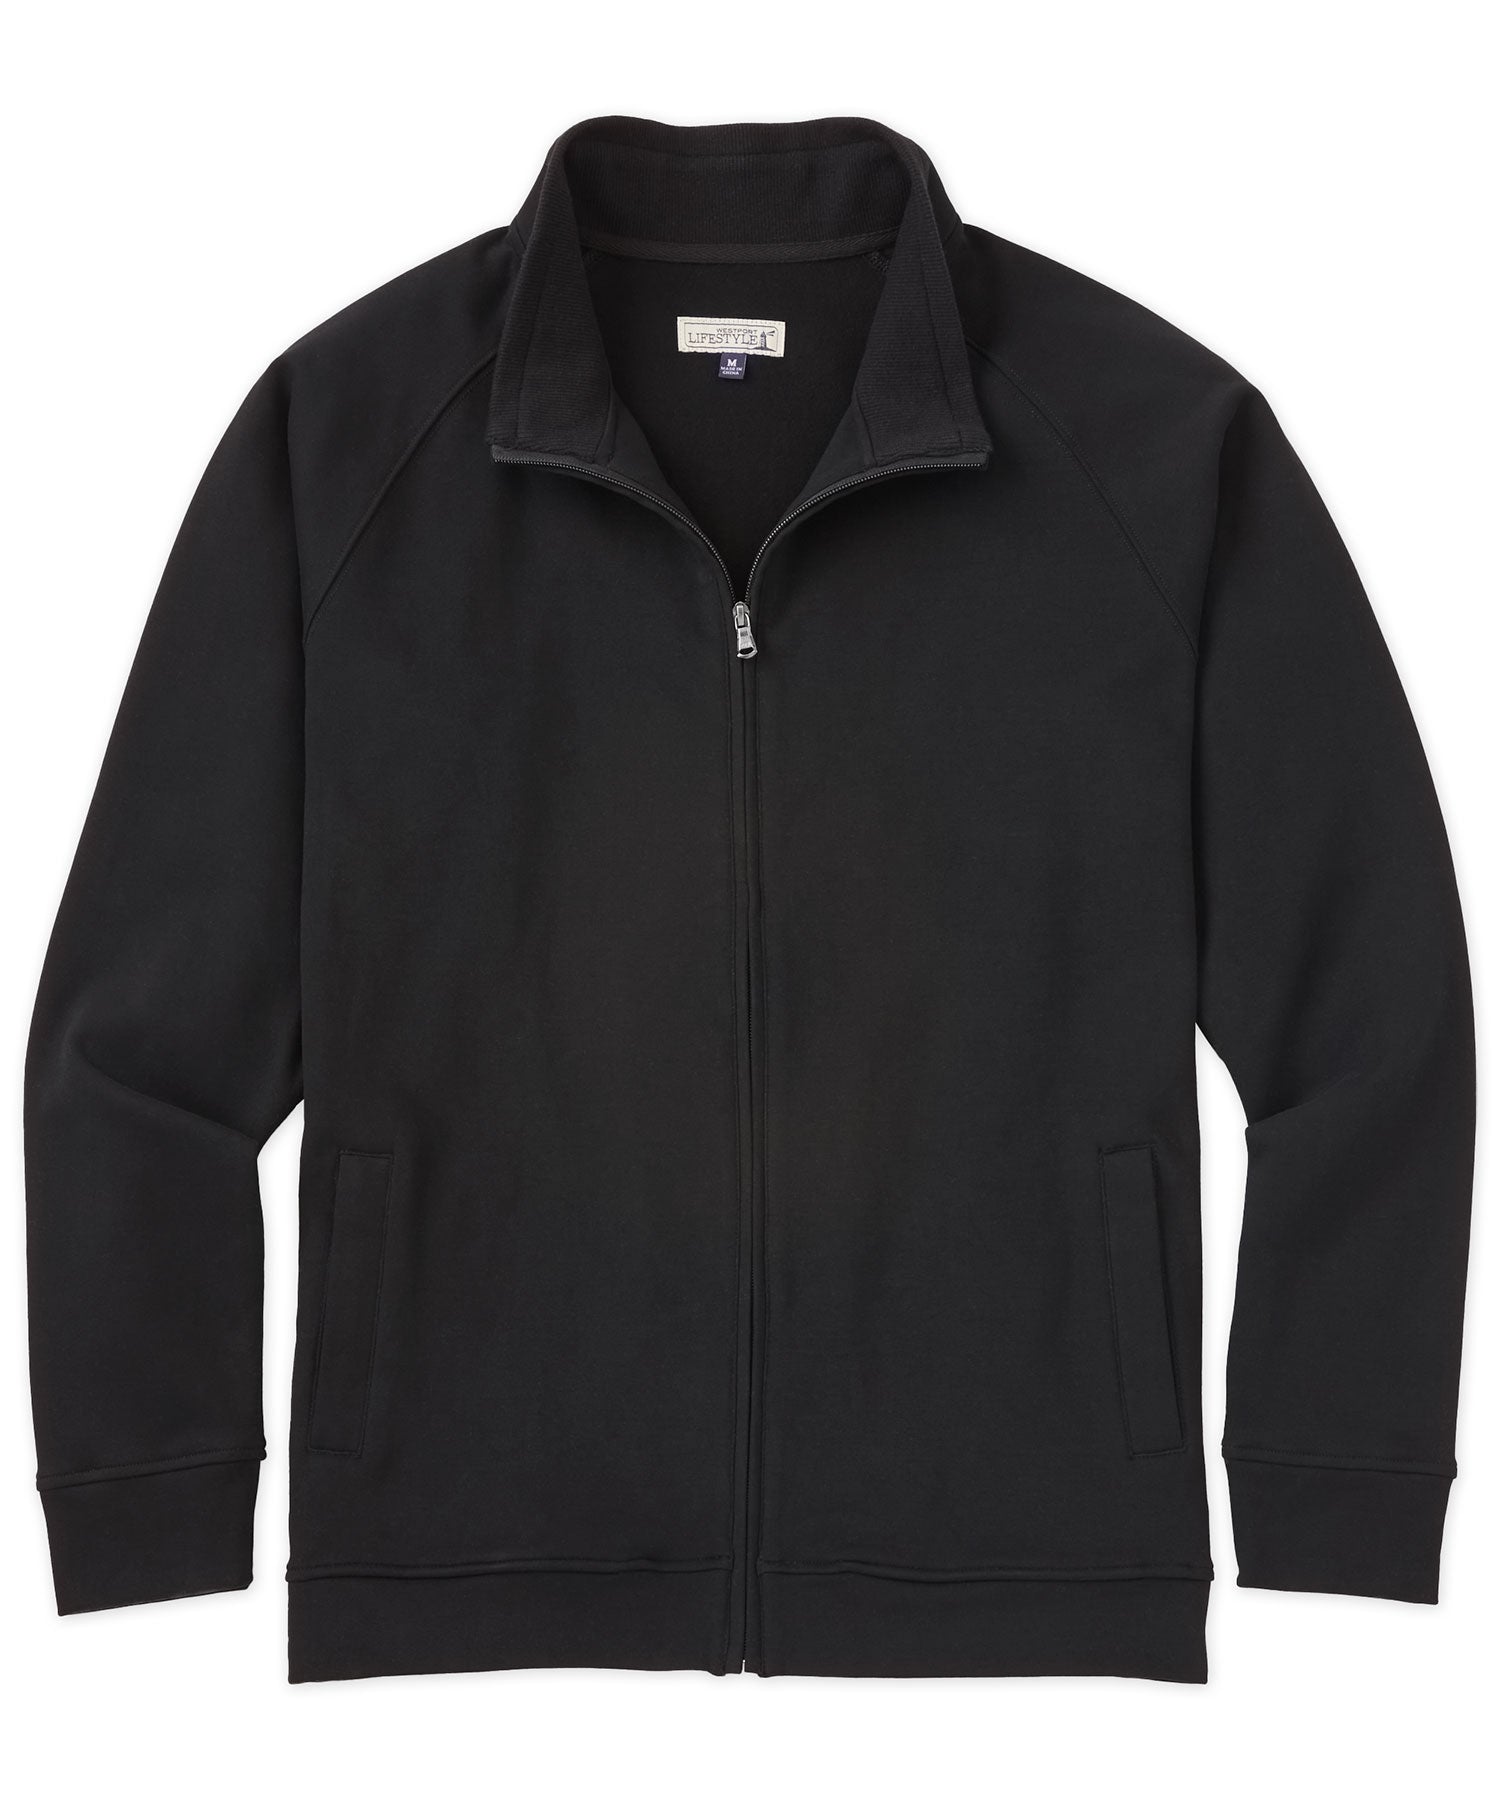 Westport Lifestyle Luxe Fleece Full-Zip Jacket, Men's Big & Tall